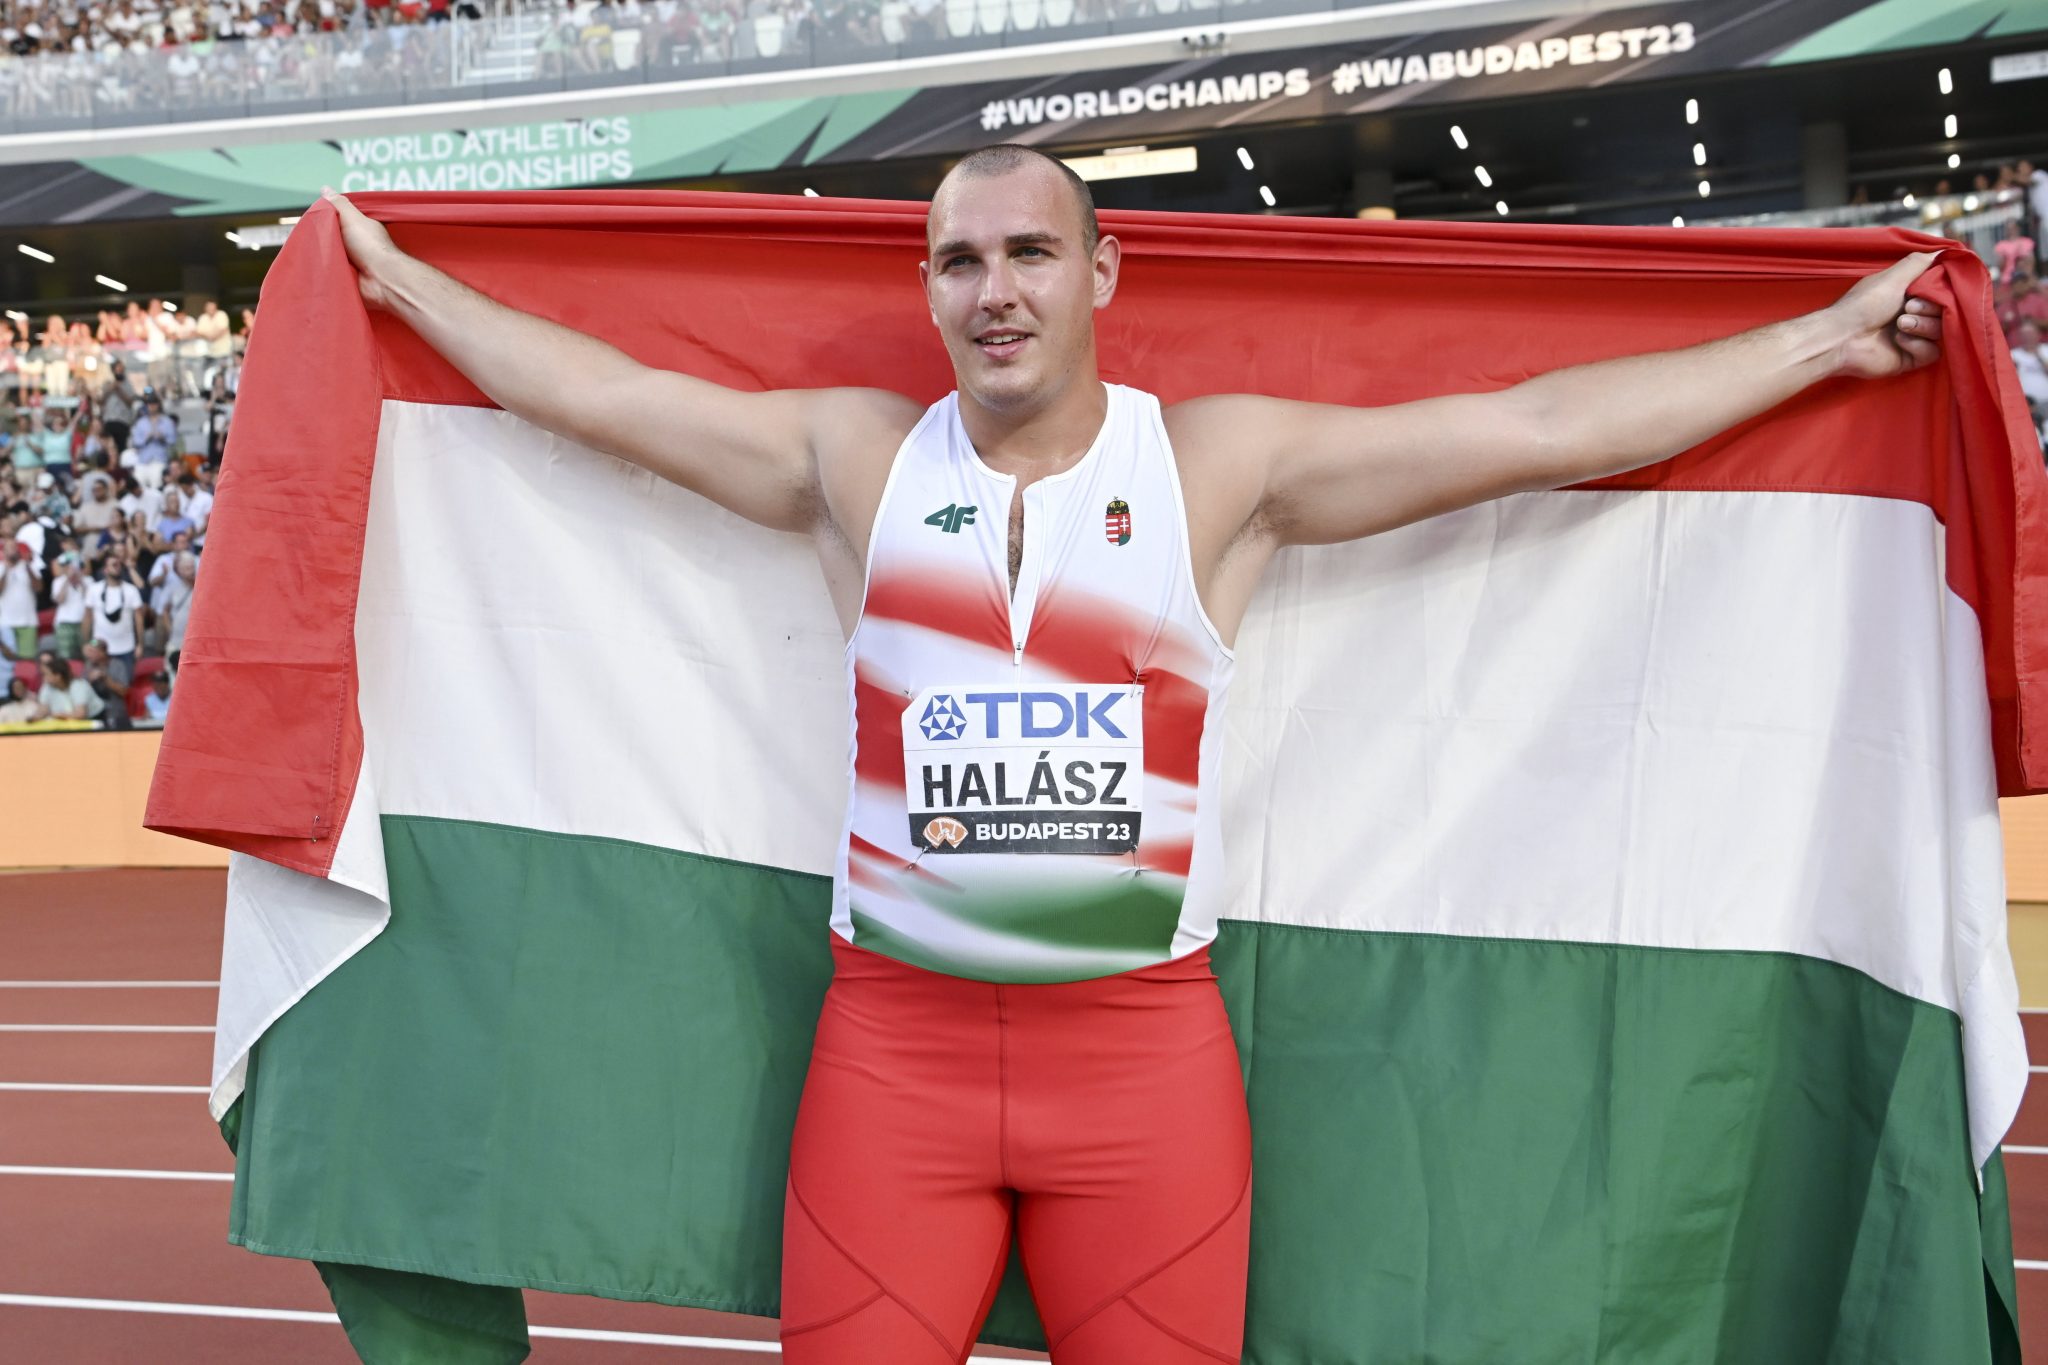 Węgierski brąz na mistrzostwach świata w lekkiej atletyce